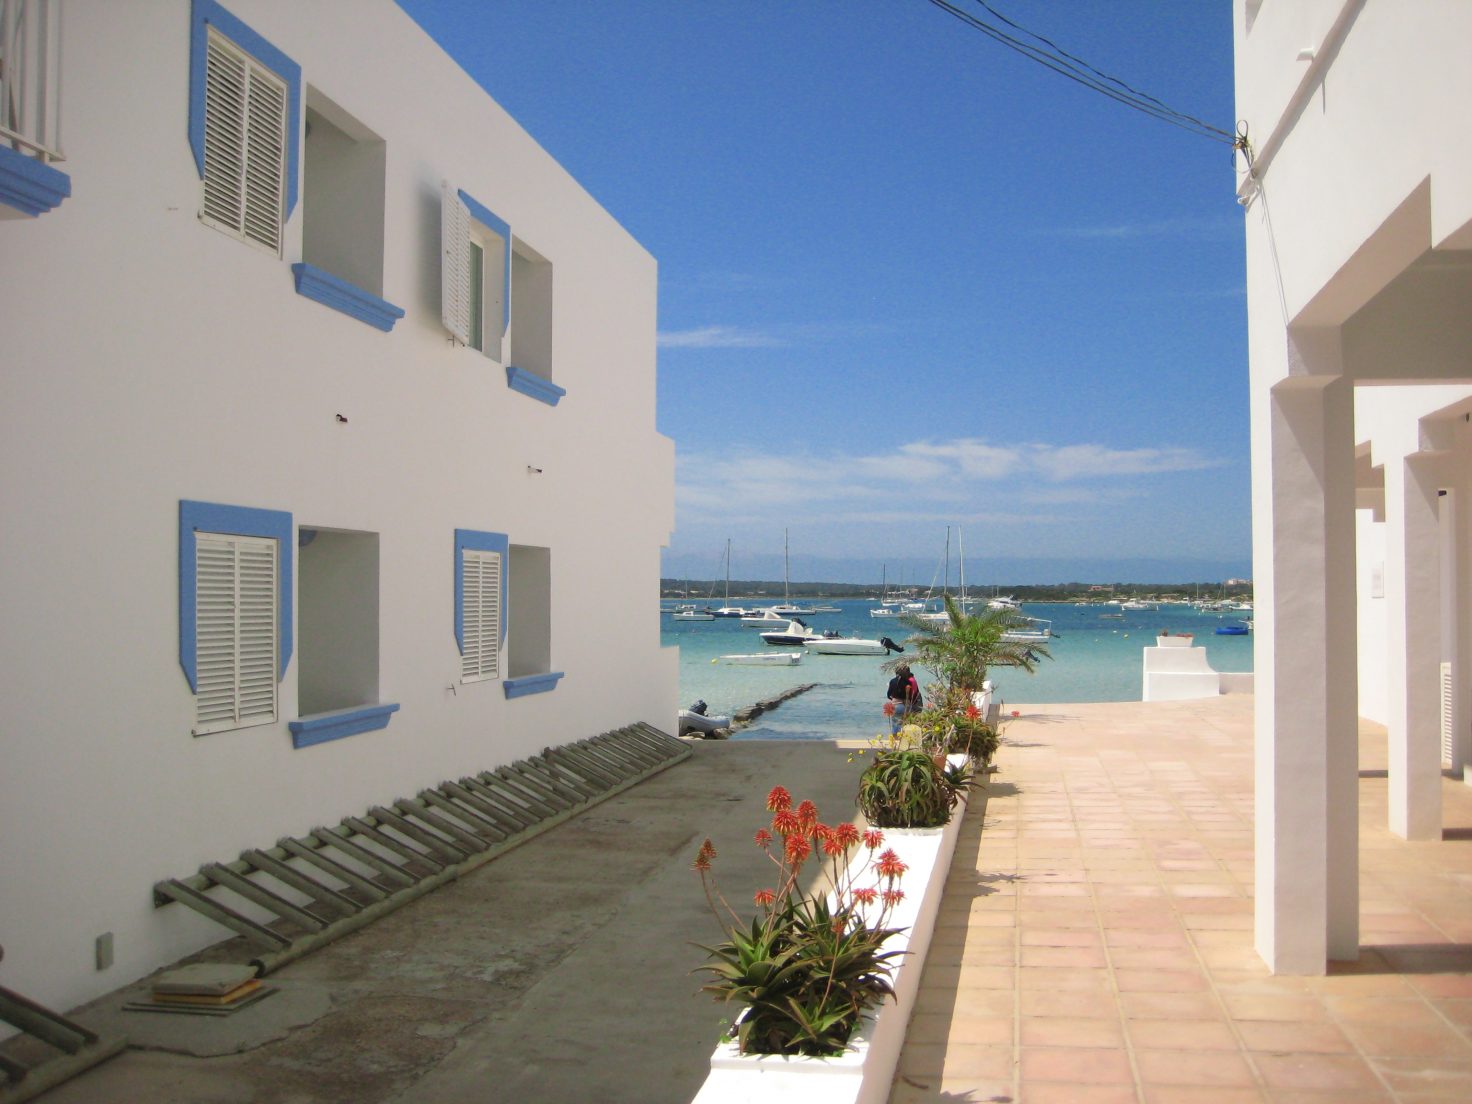 Une petite ruelle donnant sur une petite lagune à Formentera